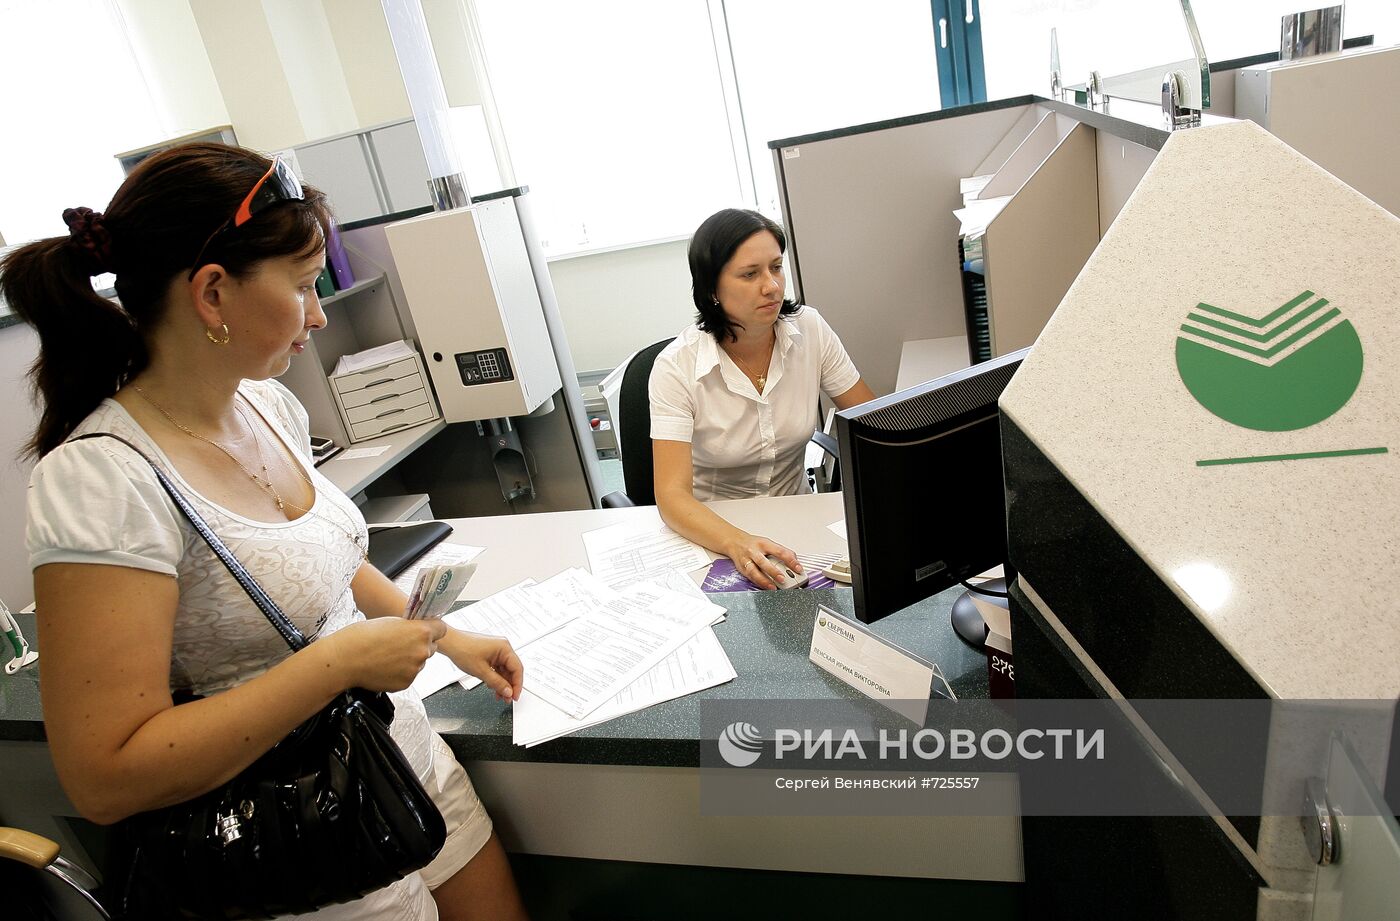 Зал обслуживания клиентов в Юго-Западном банке Сбербанка РФ